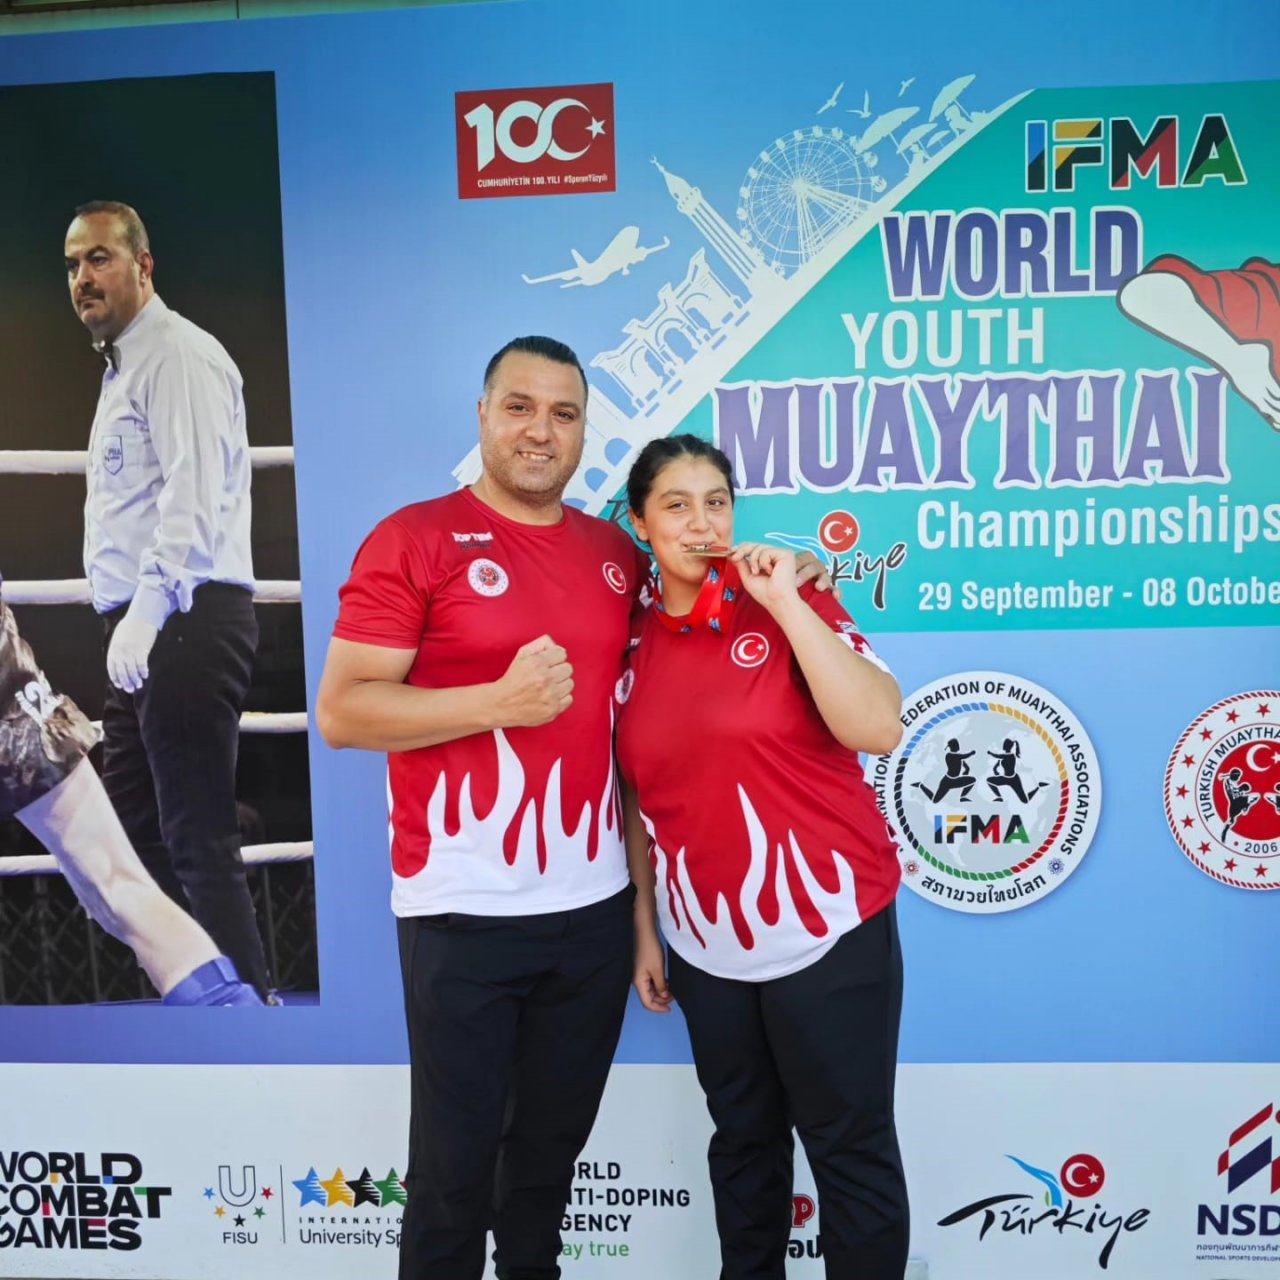 Adanalı sporcu, IFMA Gençler Dünya Muay Thai şampiyonu oldu